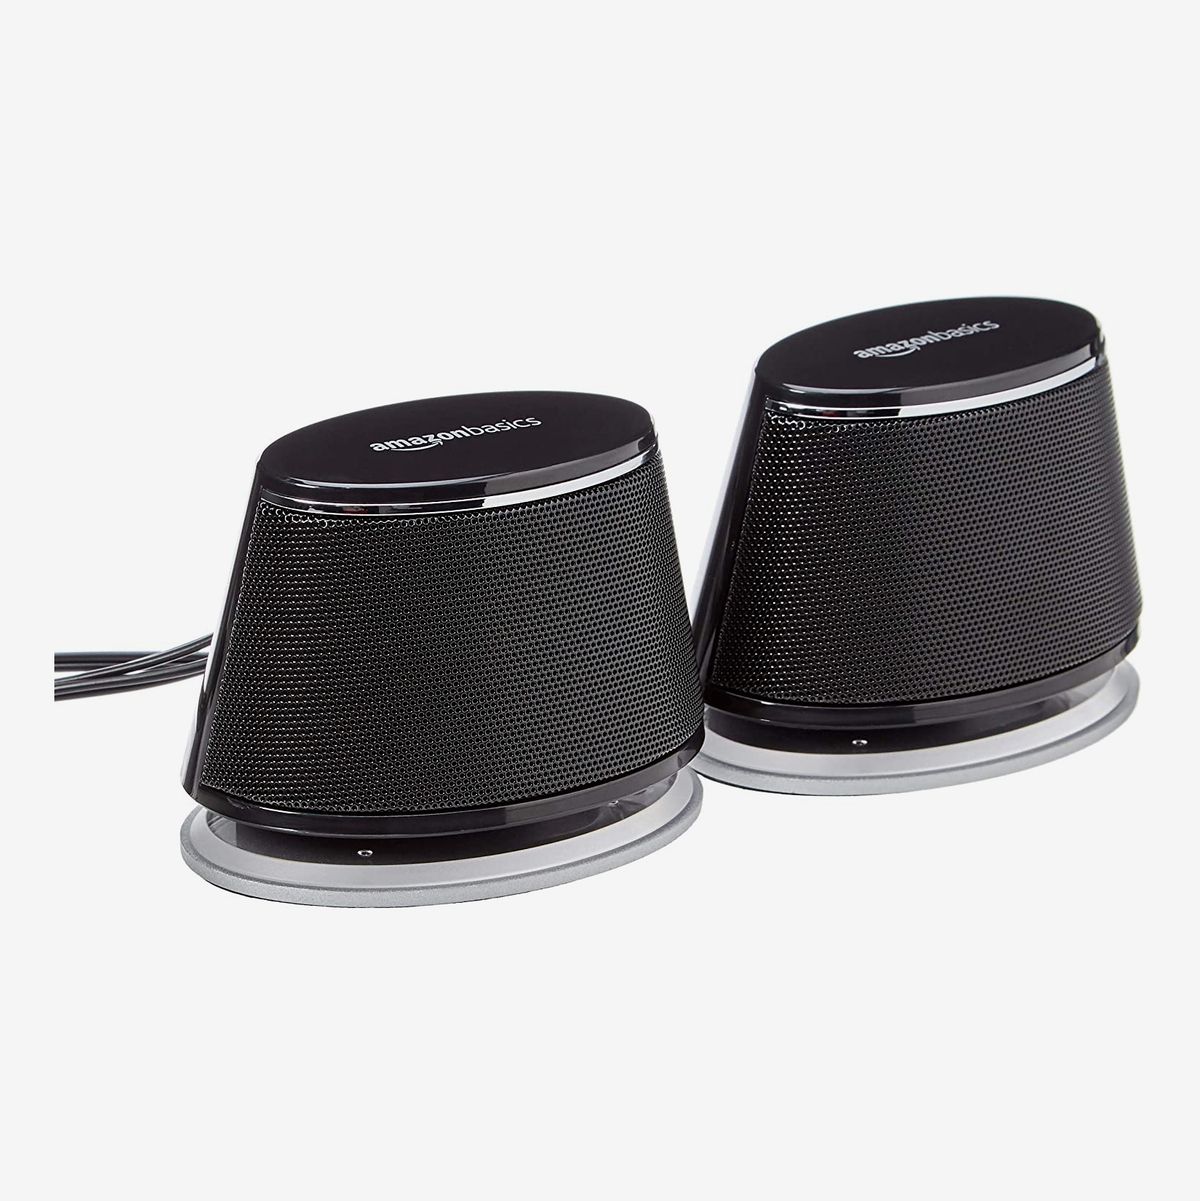 Portable Speaker Computer Small Speaker USB Notebook Desktop Mini Speaker subwoofer Mobile Phone Portable Speaker